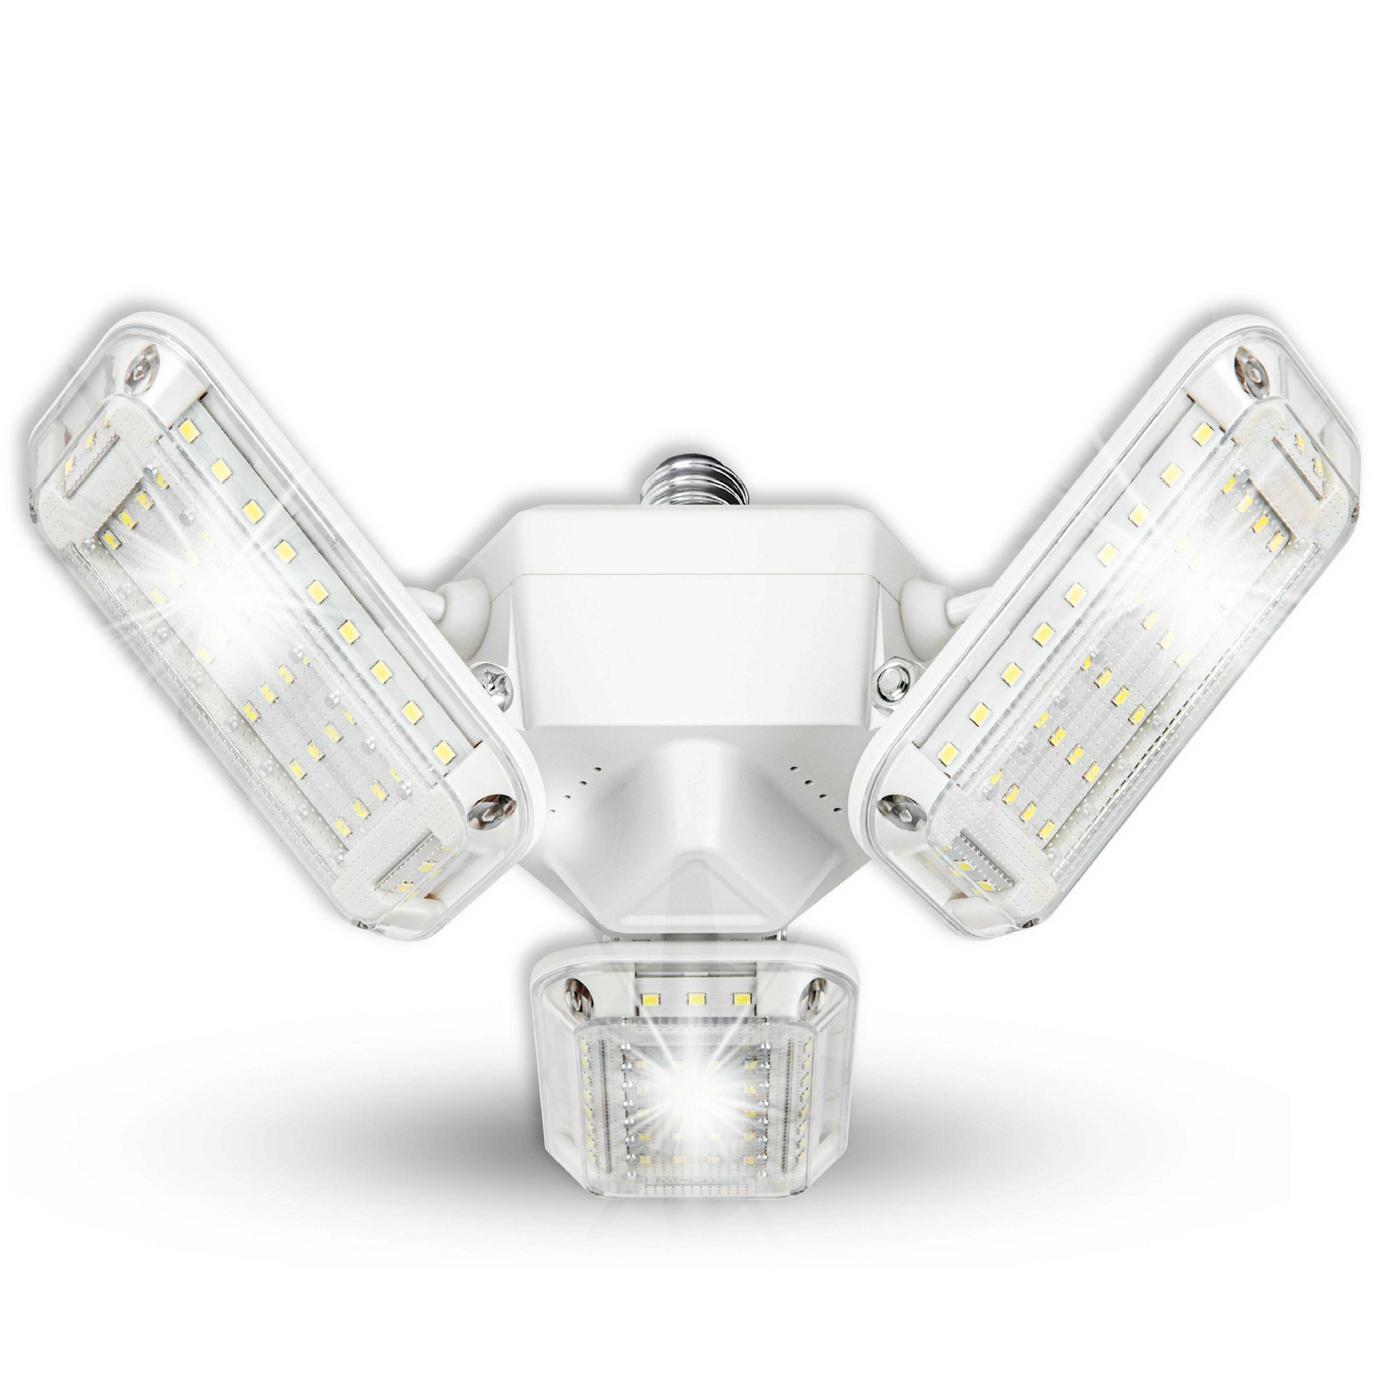 Bell + Howell Triburst 360 Shop Light Bulb; image 8 of 9